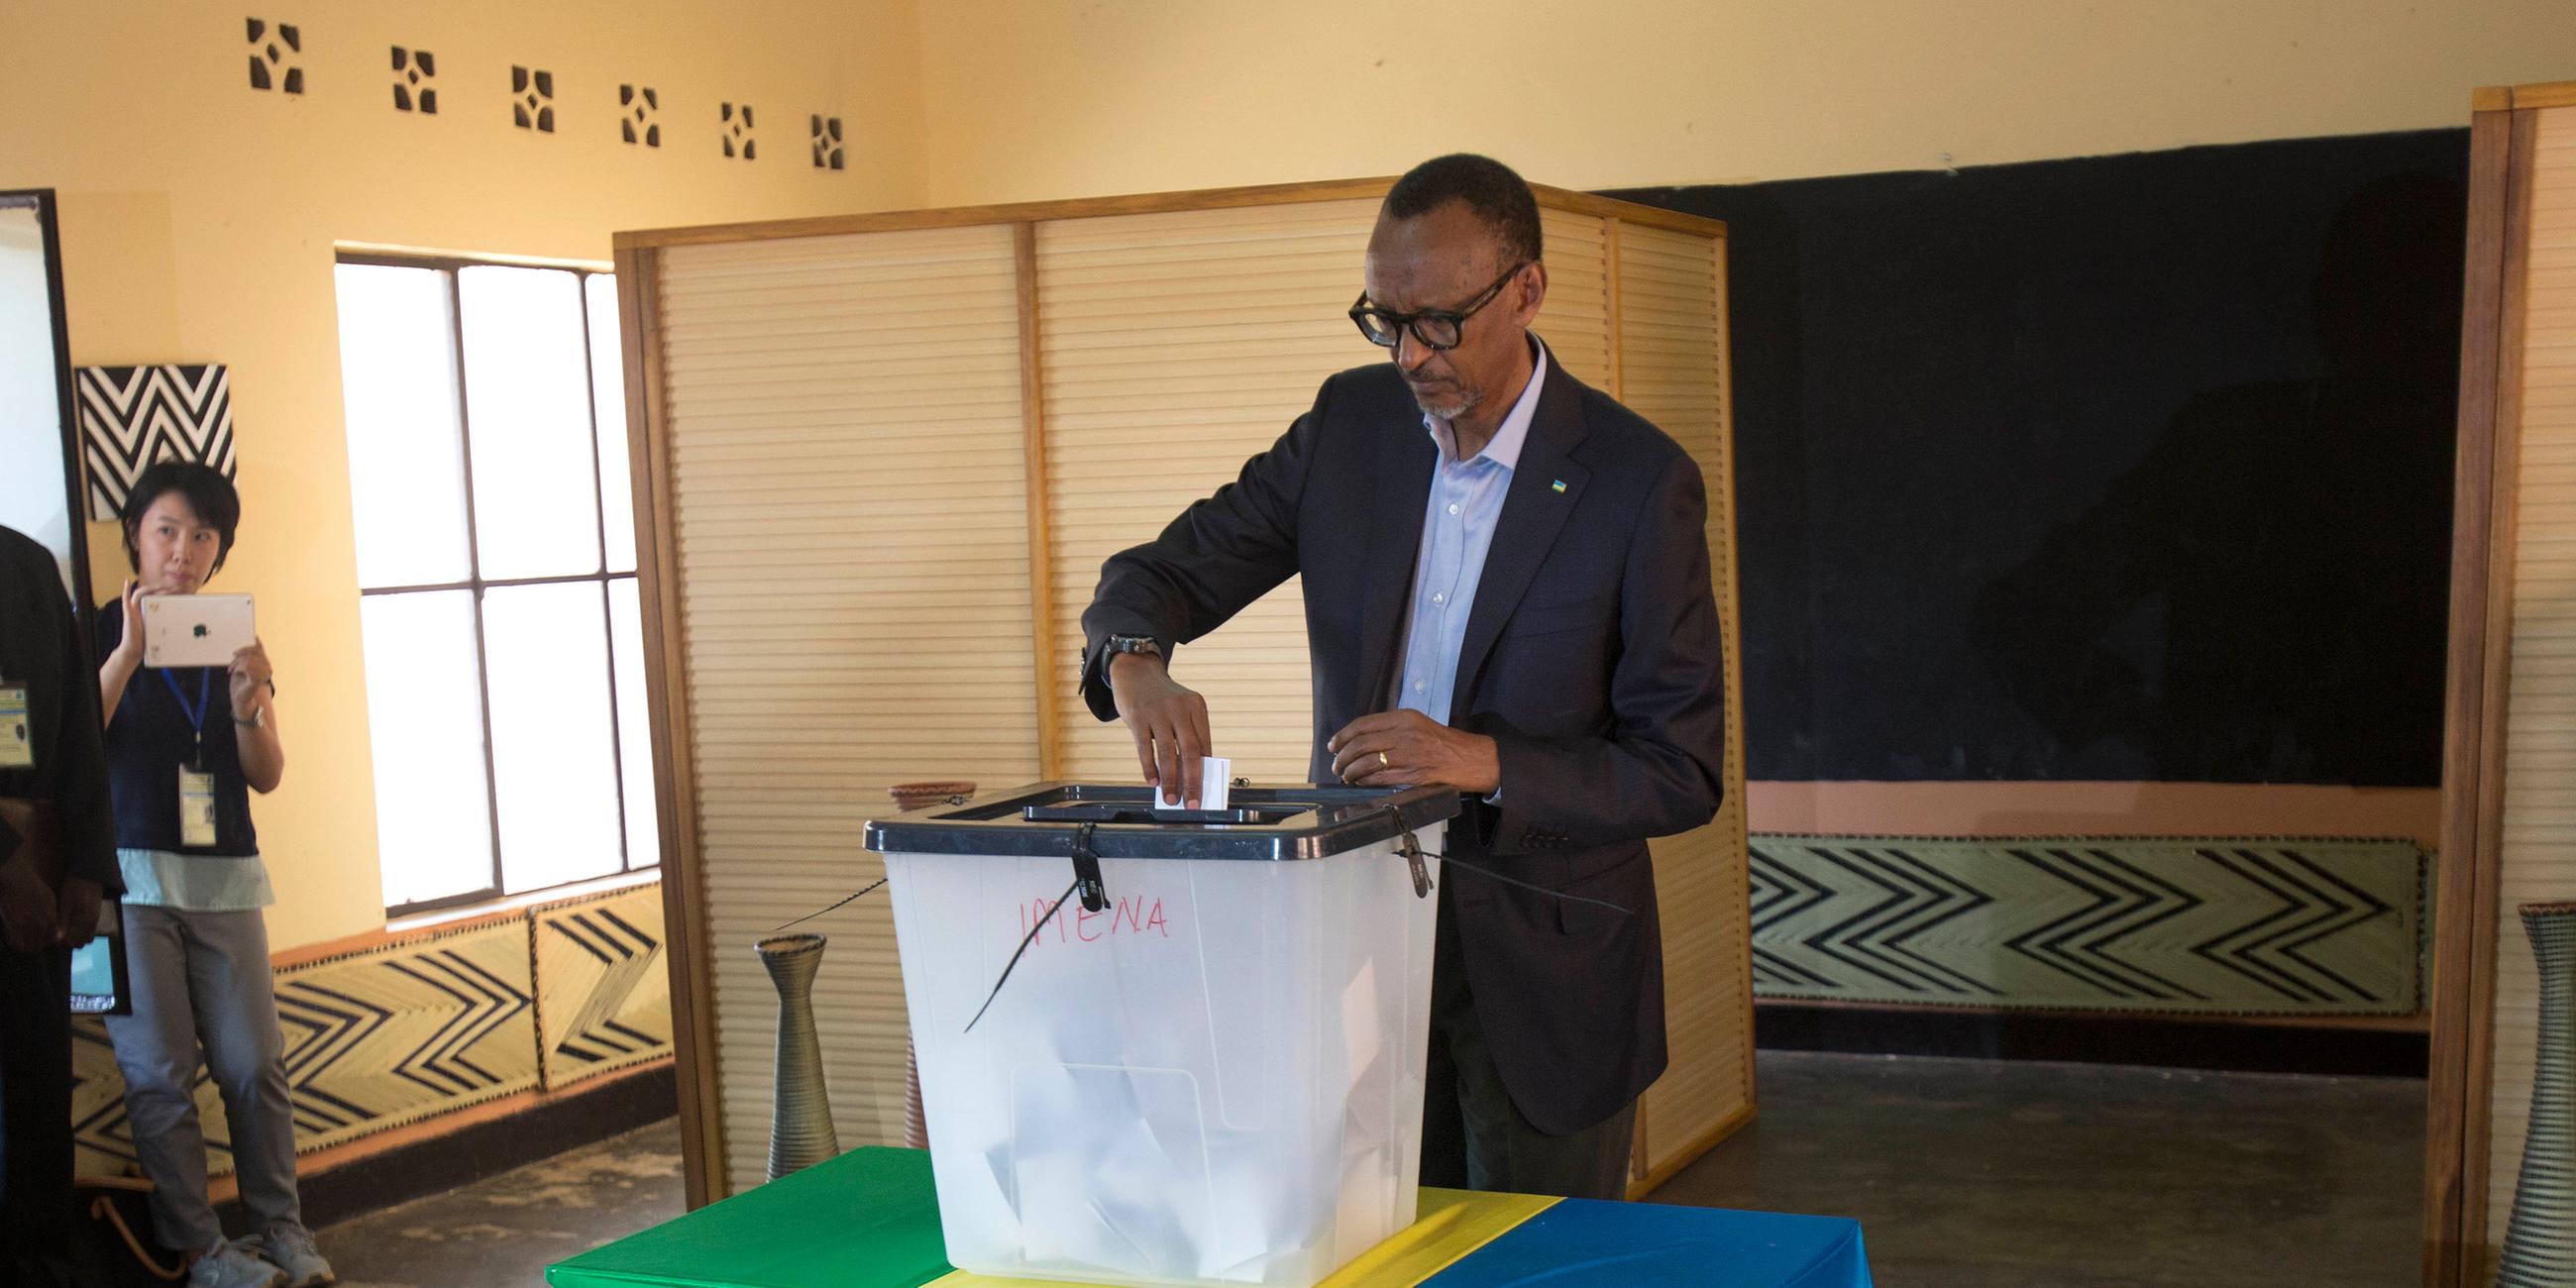 rwanda-presidential election